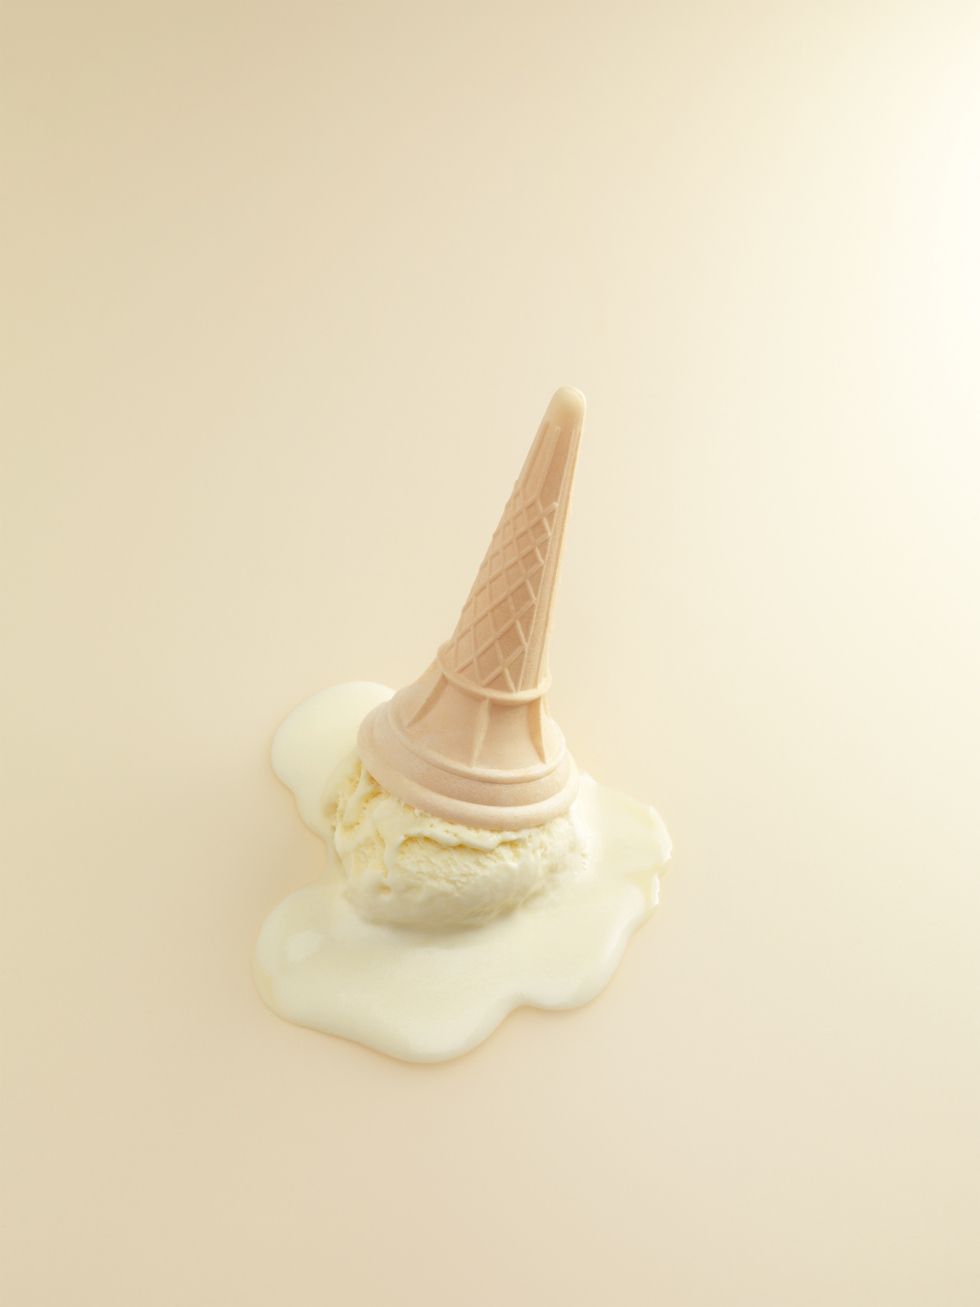 Ice cream for Cereal Magazine. Menu. Cereal magazine, Cream aesthetic, Ice cream design